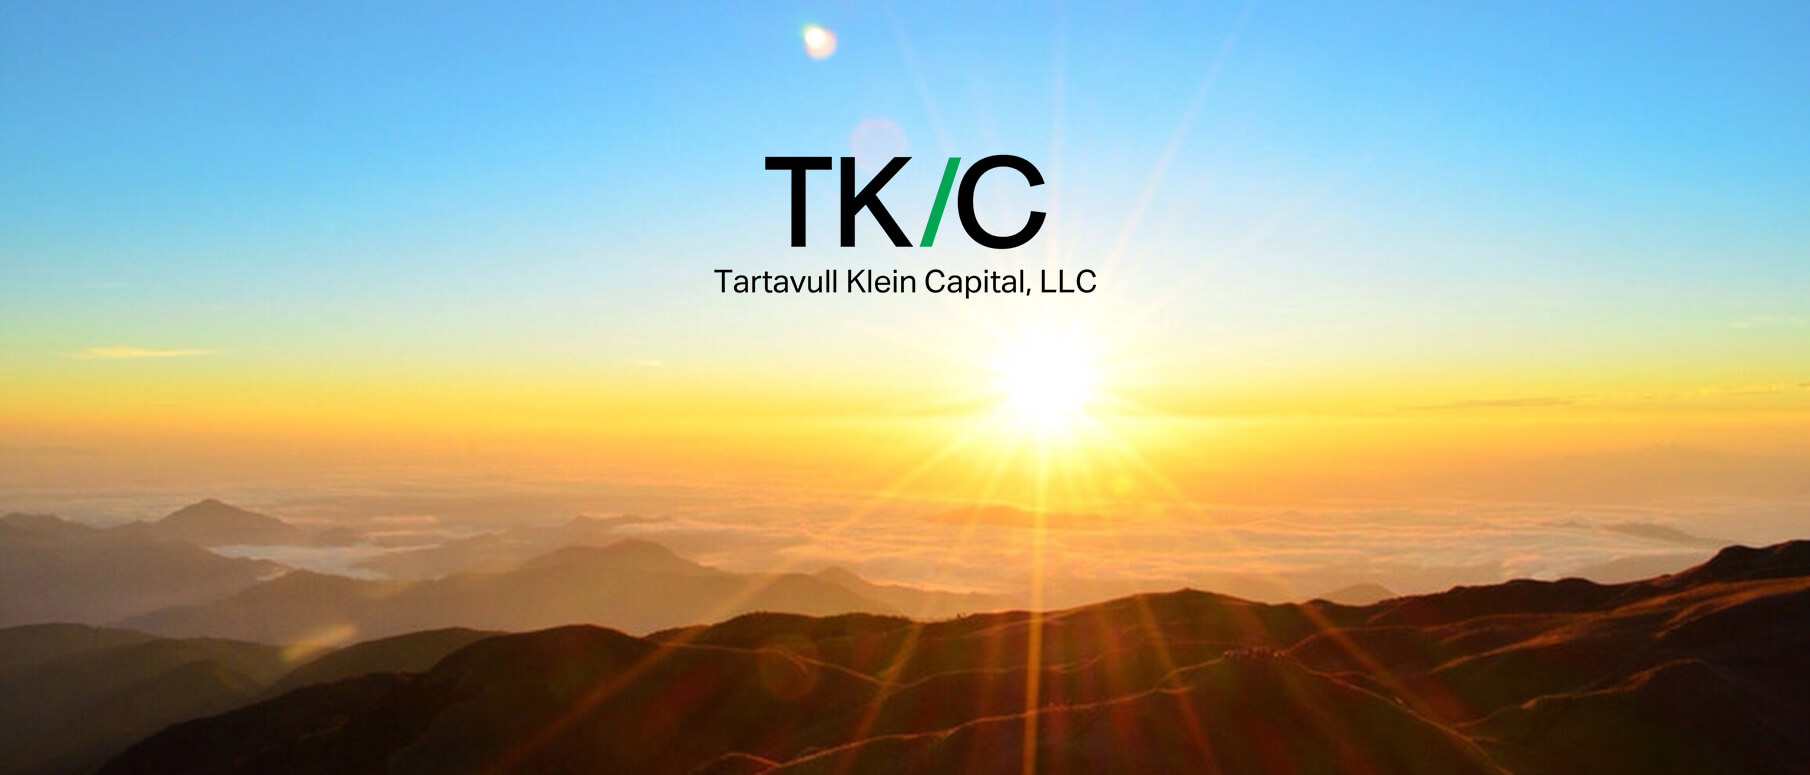 Tartavull Klein Capital